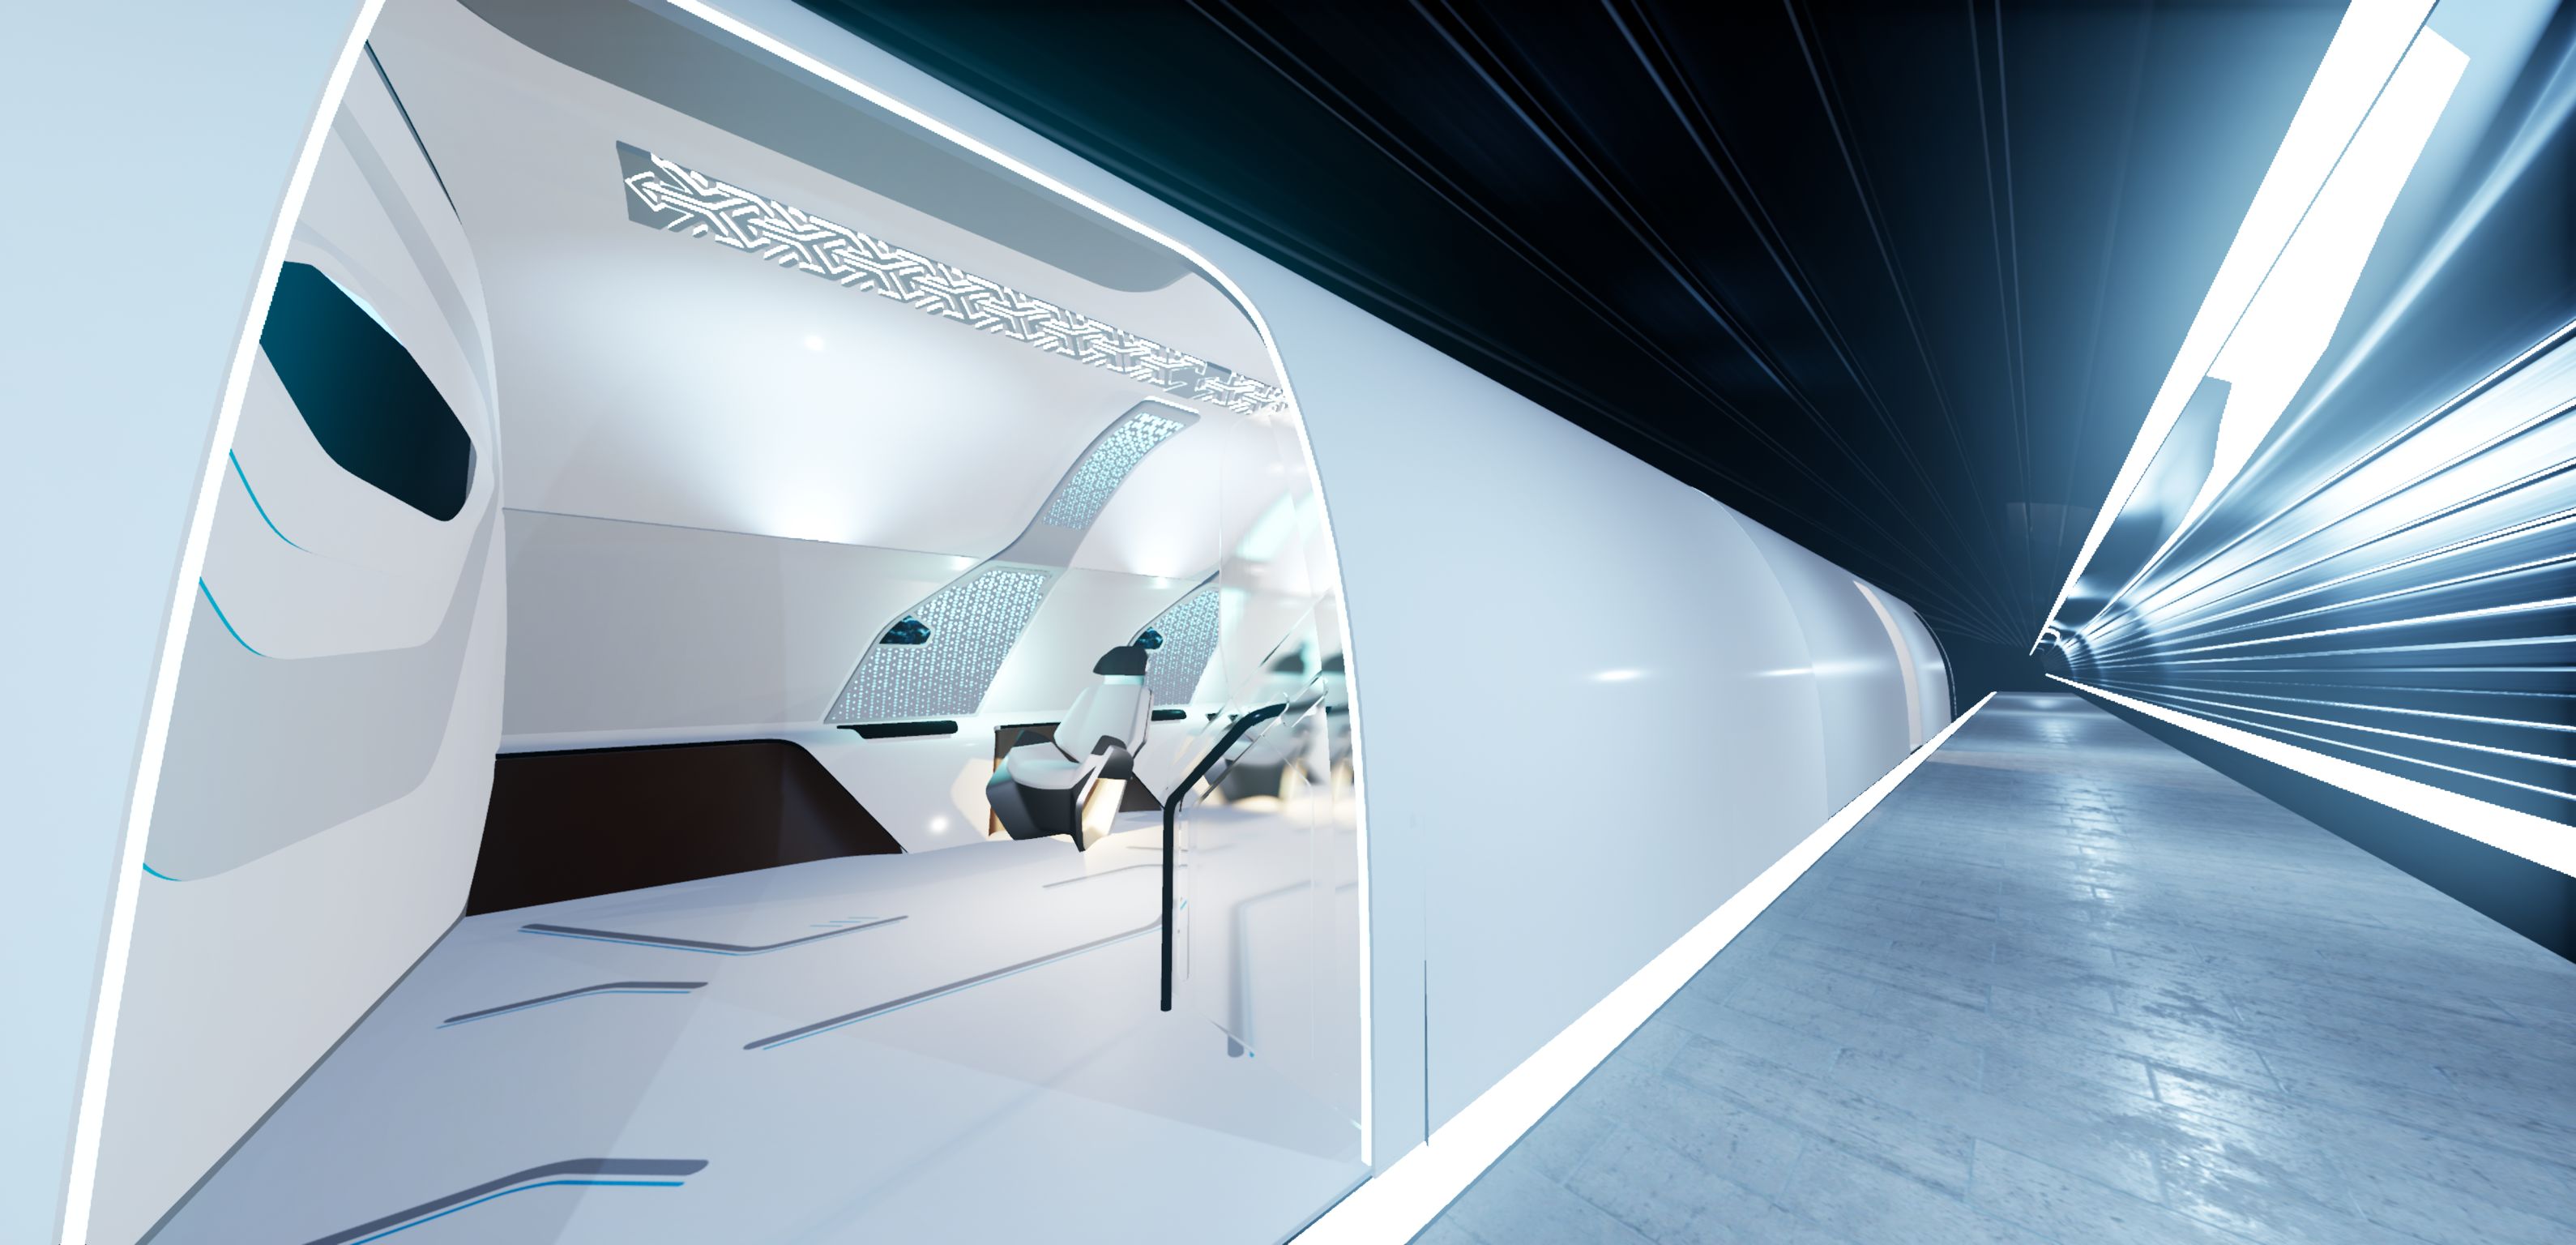 Virgin Hyperloop One Prototype Interior Design